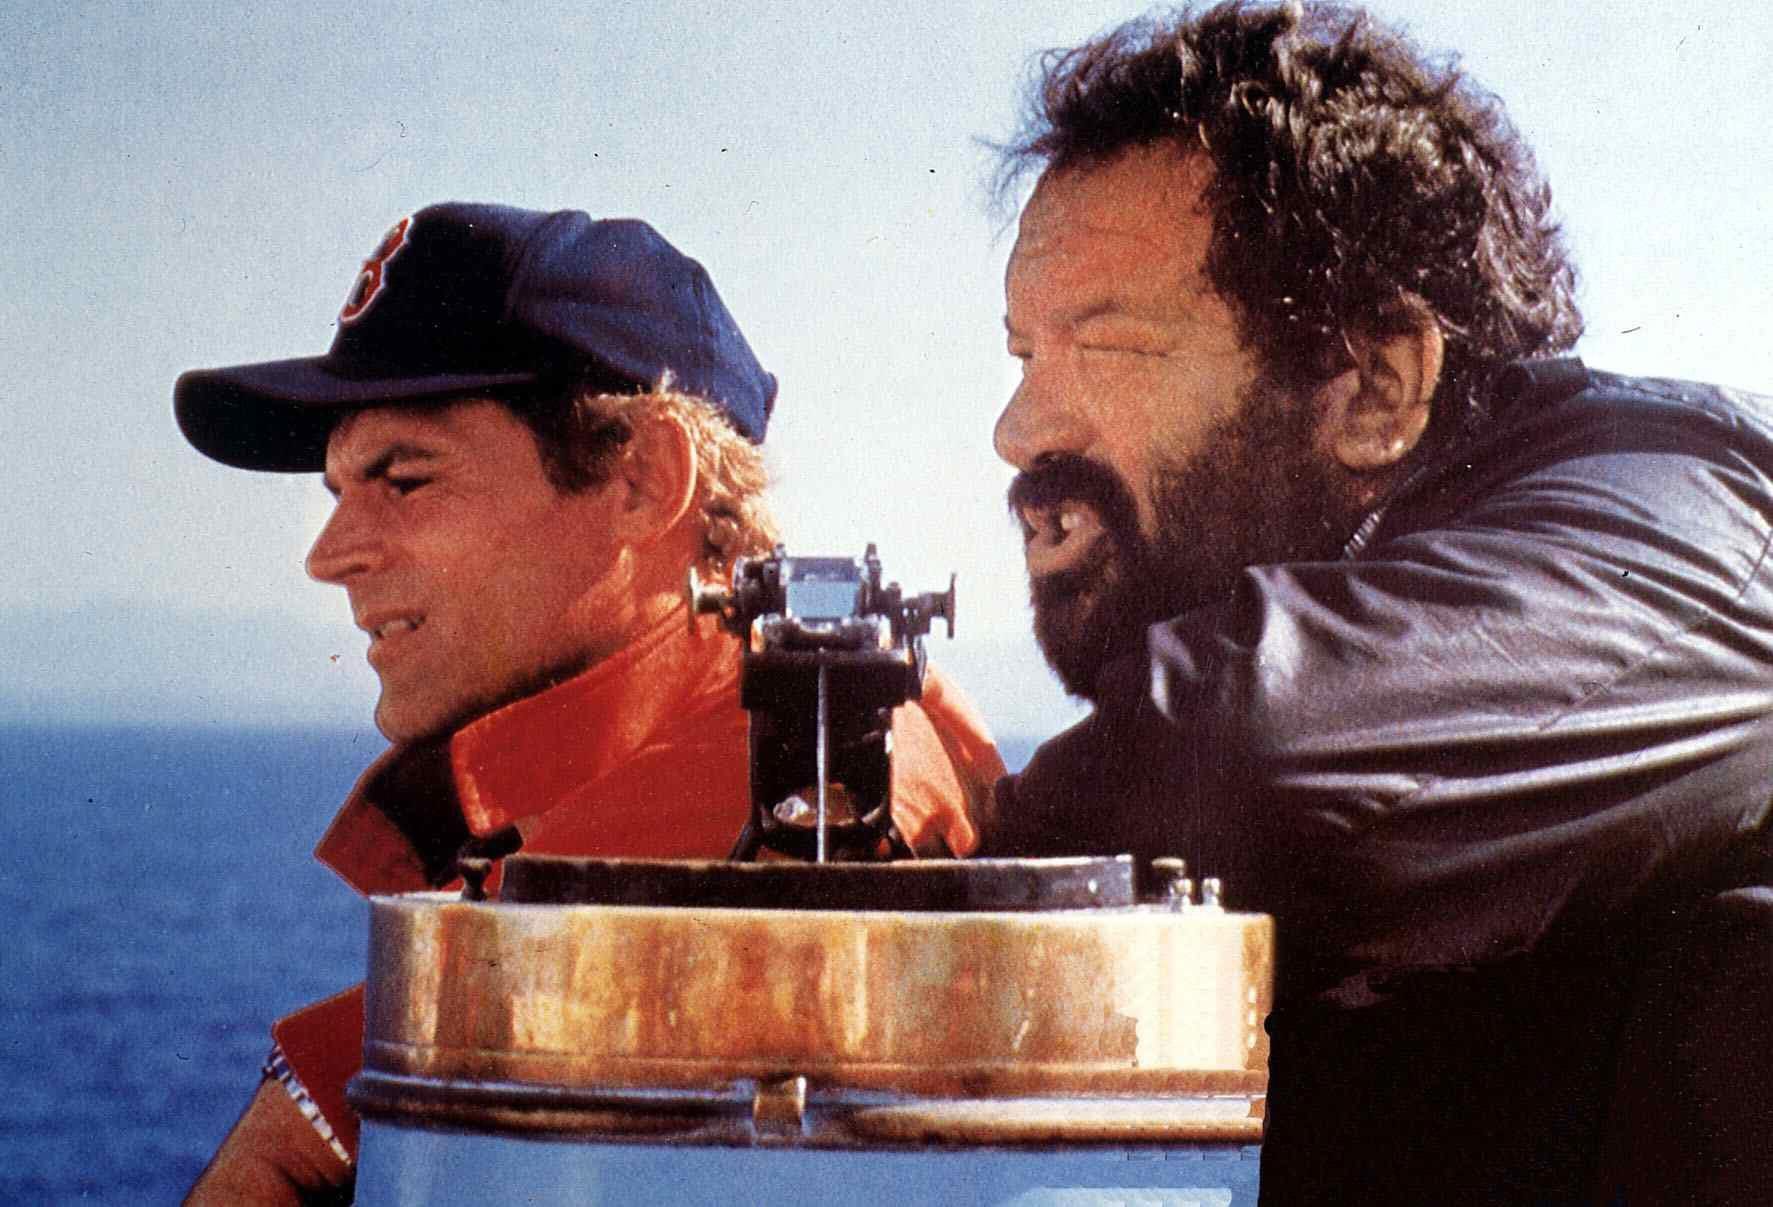 In "Zwei bärenstarke Typen" (1982) spielen die beiden die Herumtreiber Rosco Frazer und Doug O'Riordan, die auf der Flucht vor der Polizei irrtümlich für Geheimagenten gehalten werden.